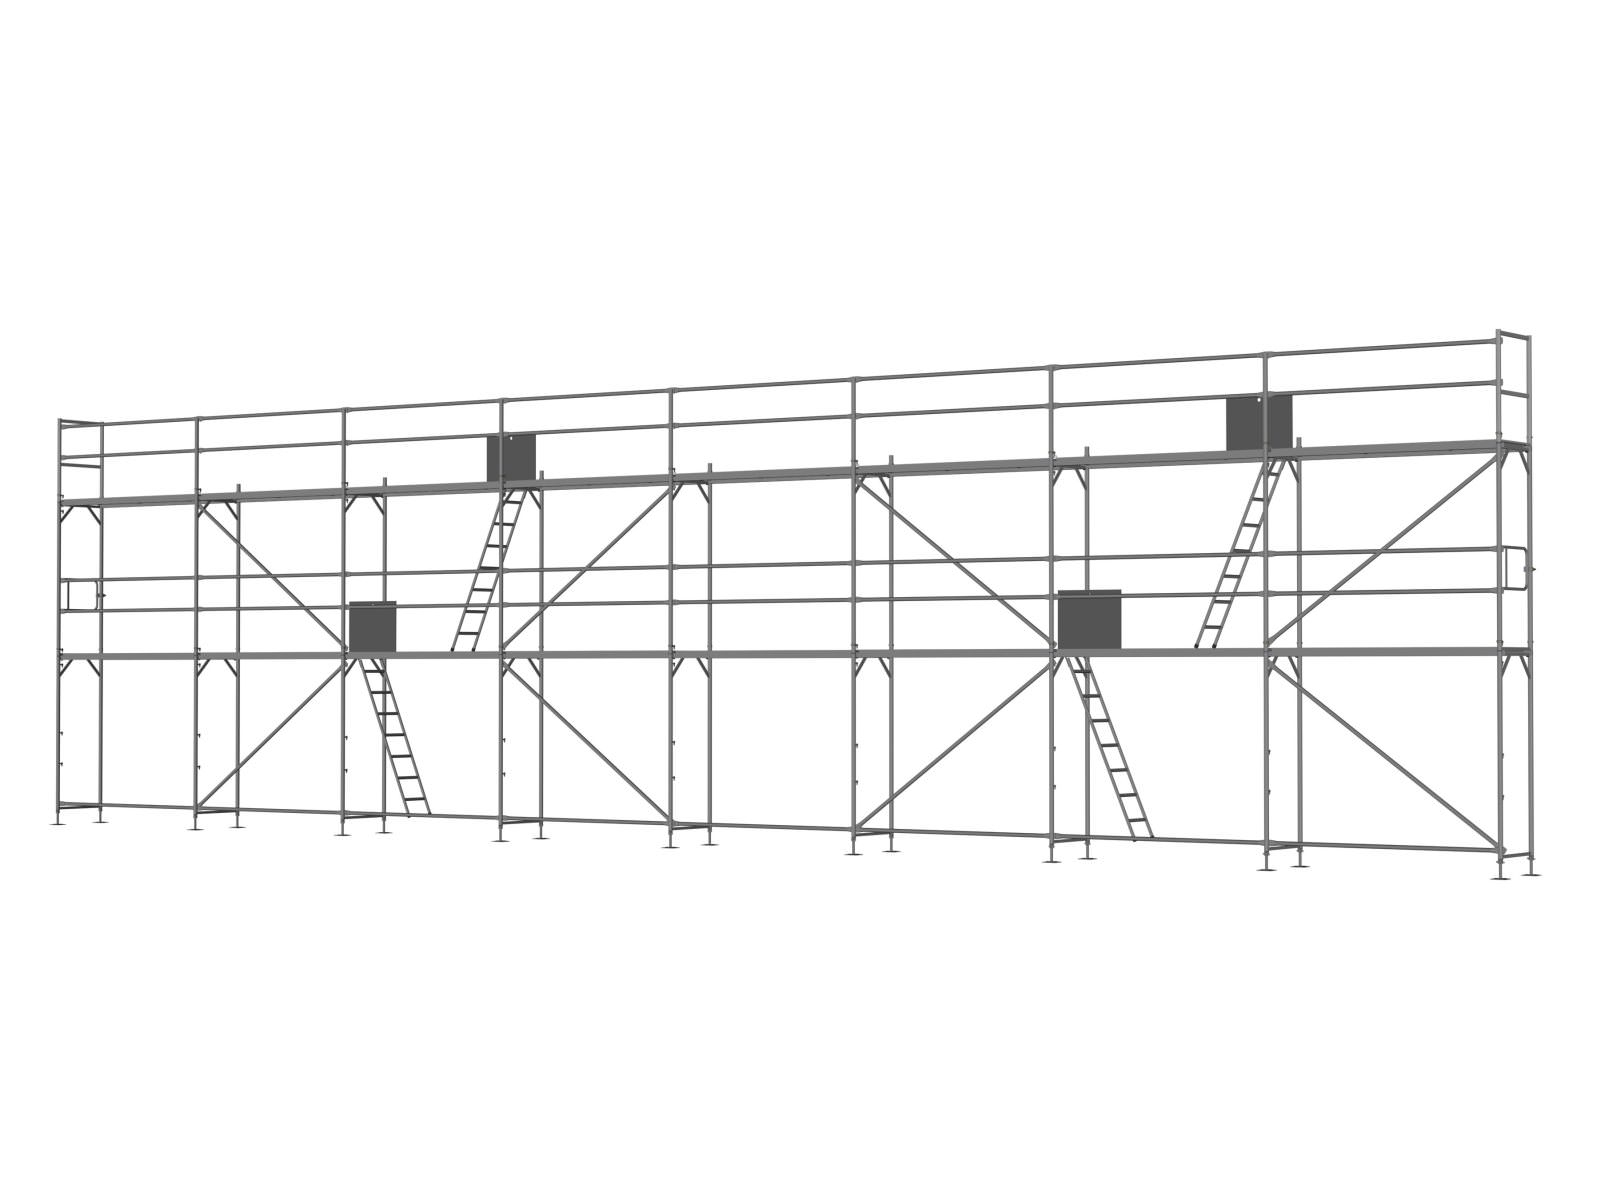 Stahl Traufseitengerüst 120 m² - 2,5 m Felder - 20 m lang - 6 m Arbeitshöhe - Basis-Gerüst inkl. Aufstieg & Befestigung